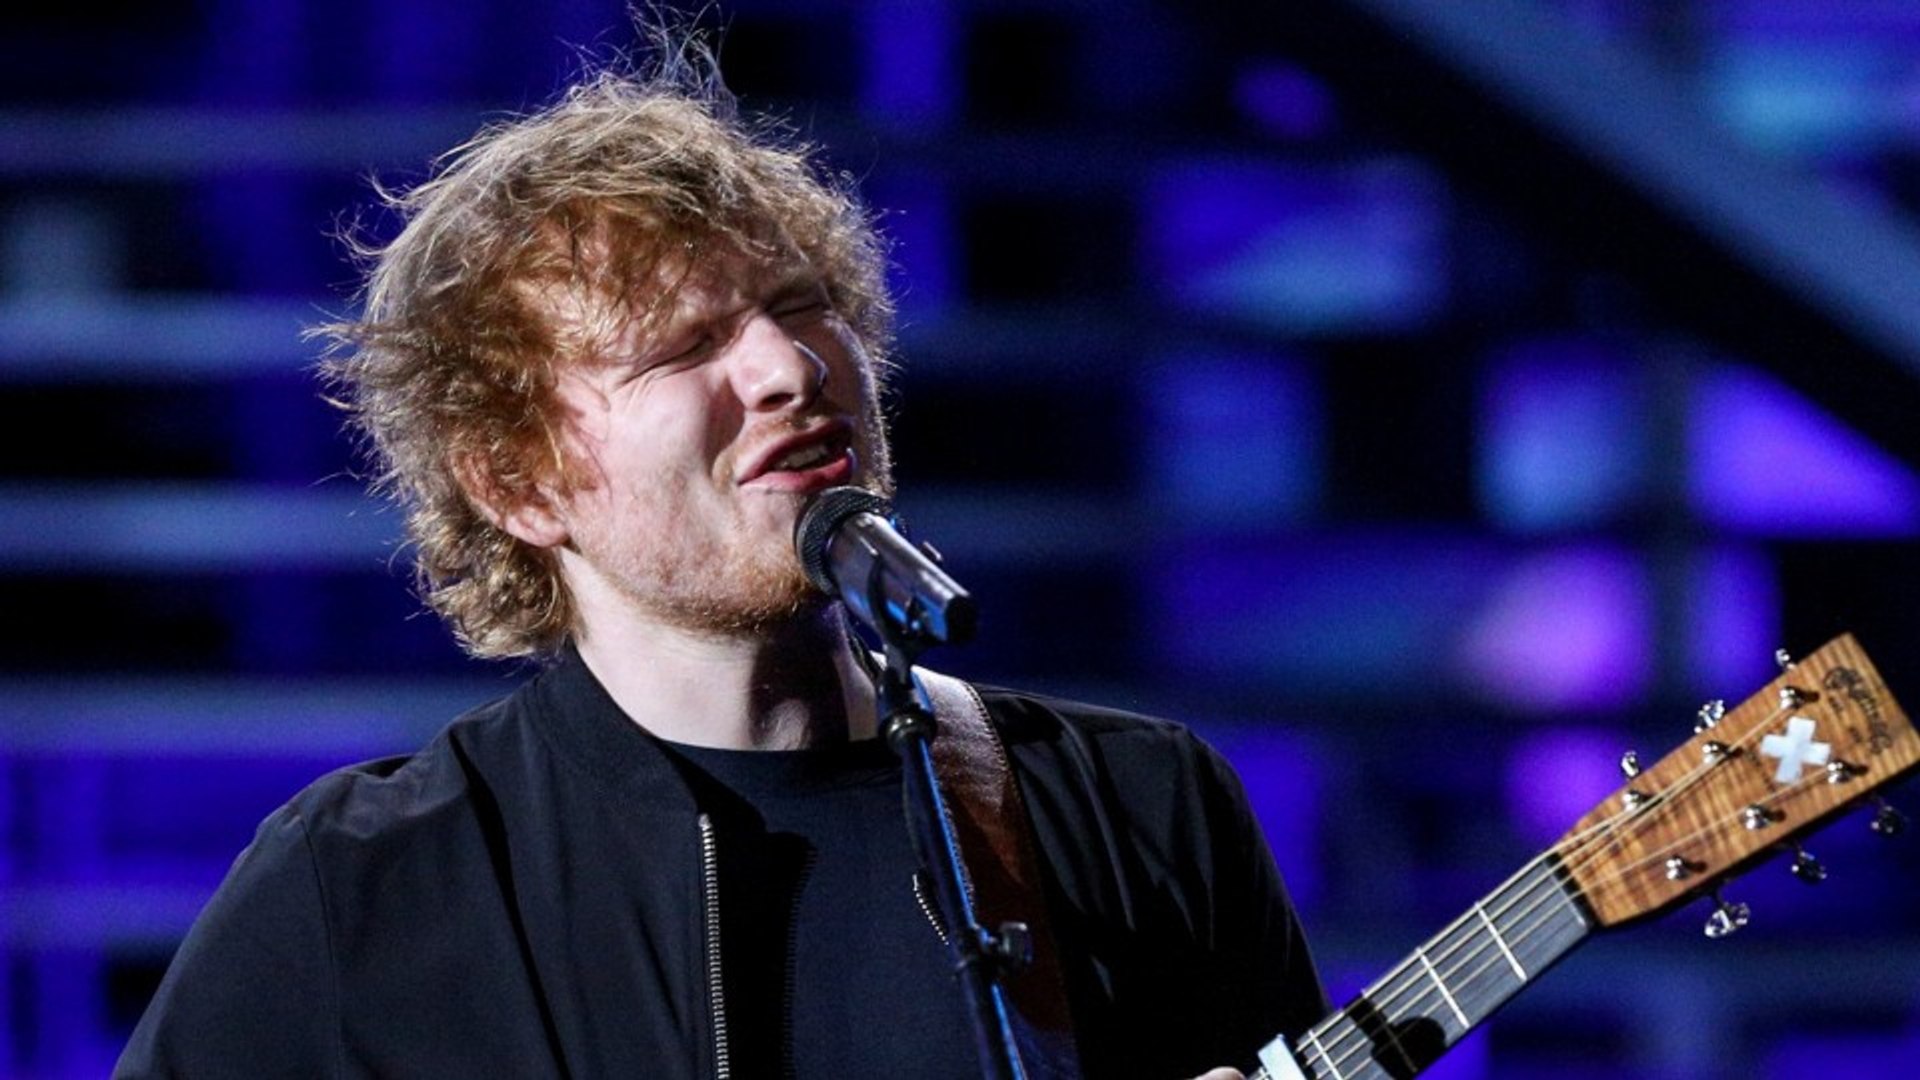 Ed Sheeran To Perform At Grammys